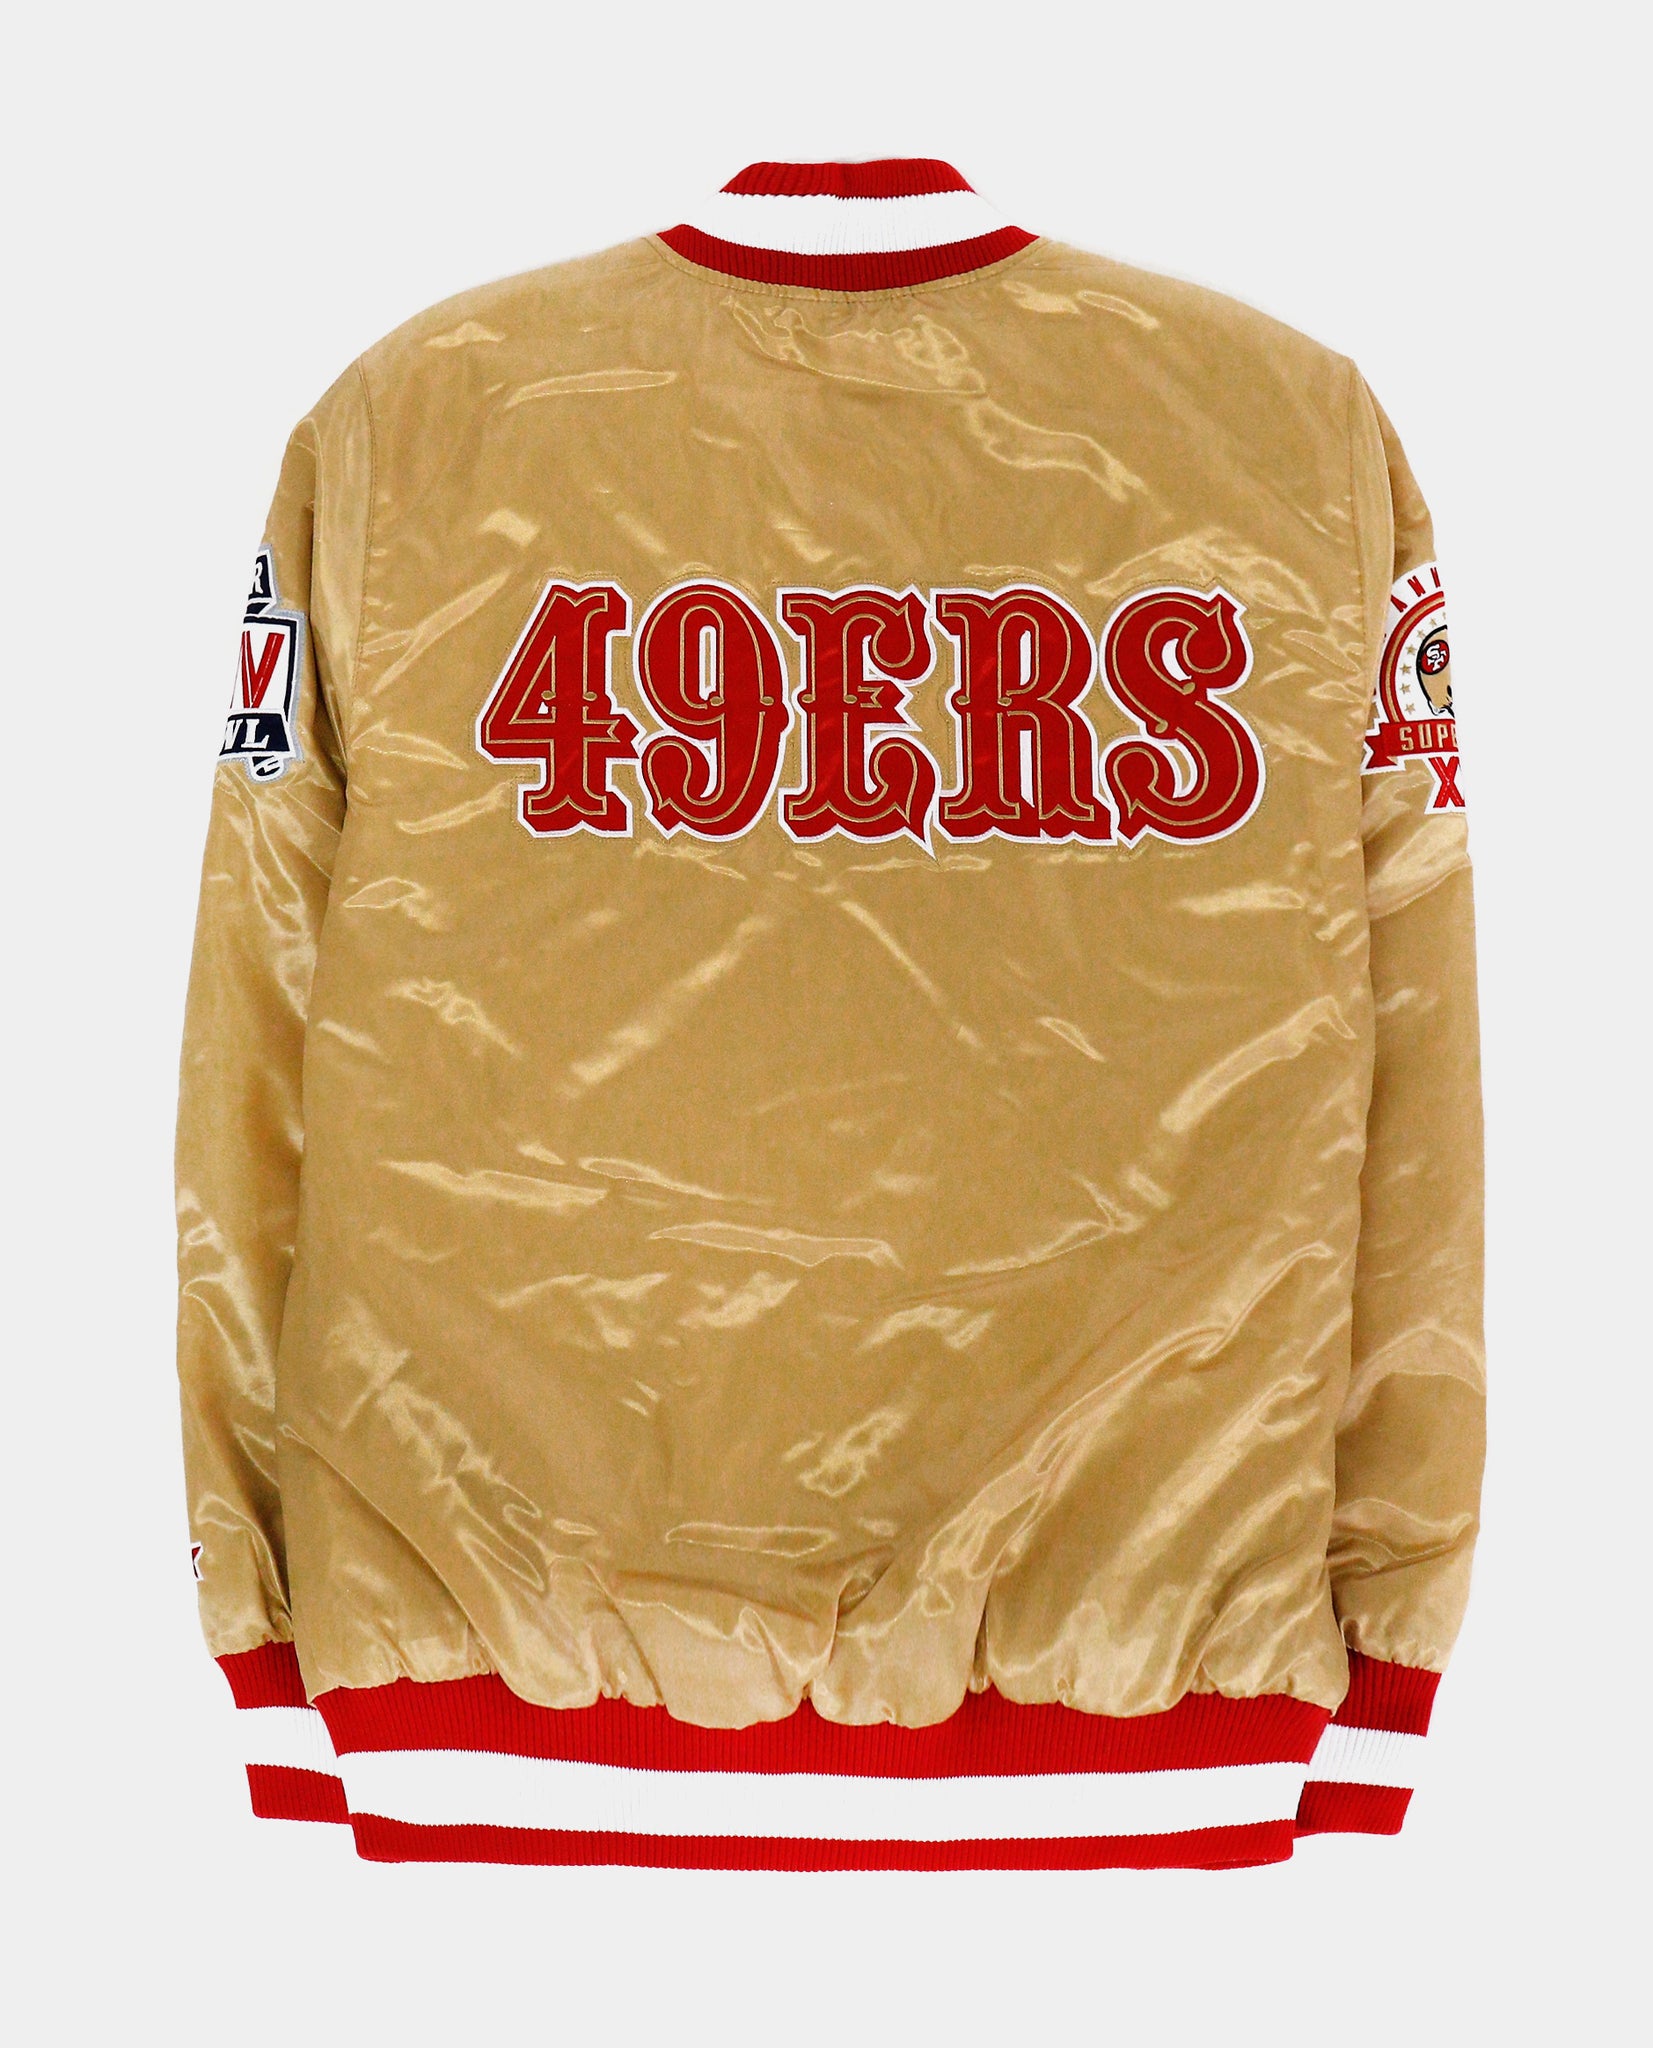 San Francisco 49ers Letterman Jacket - 49ers Varsity Jacket